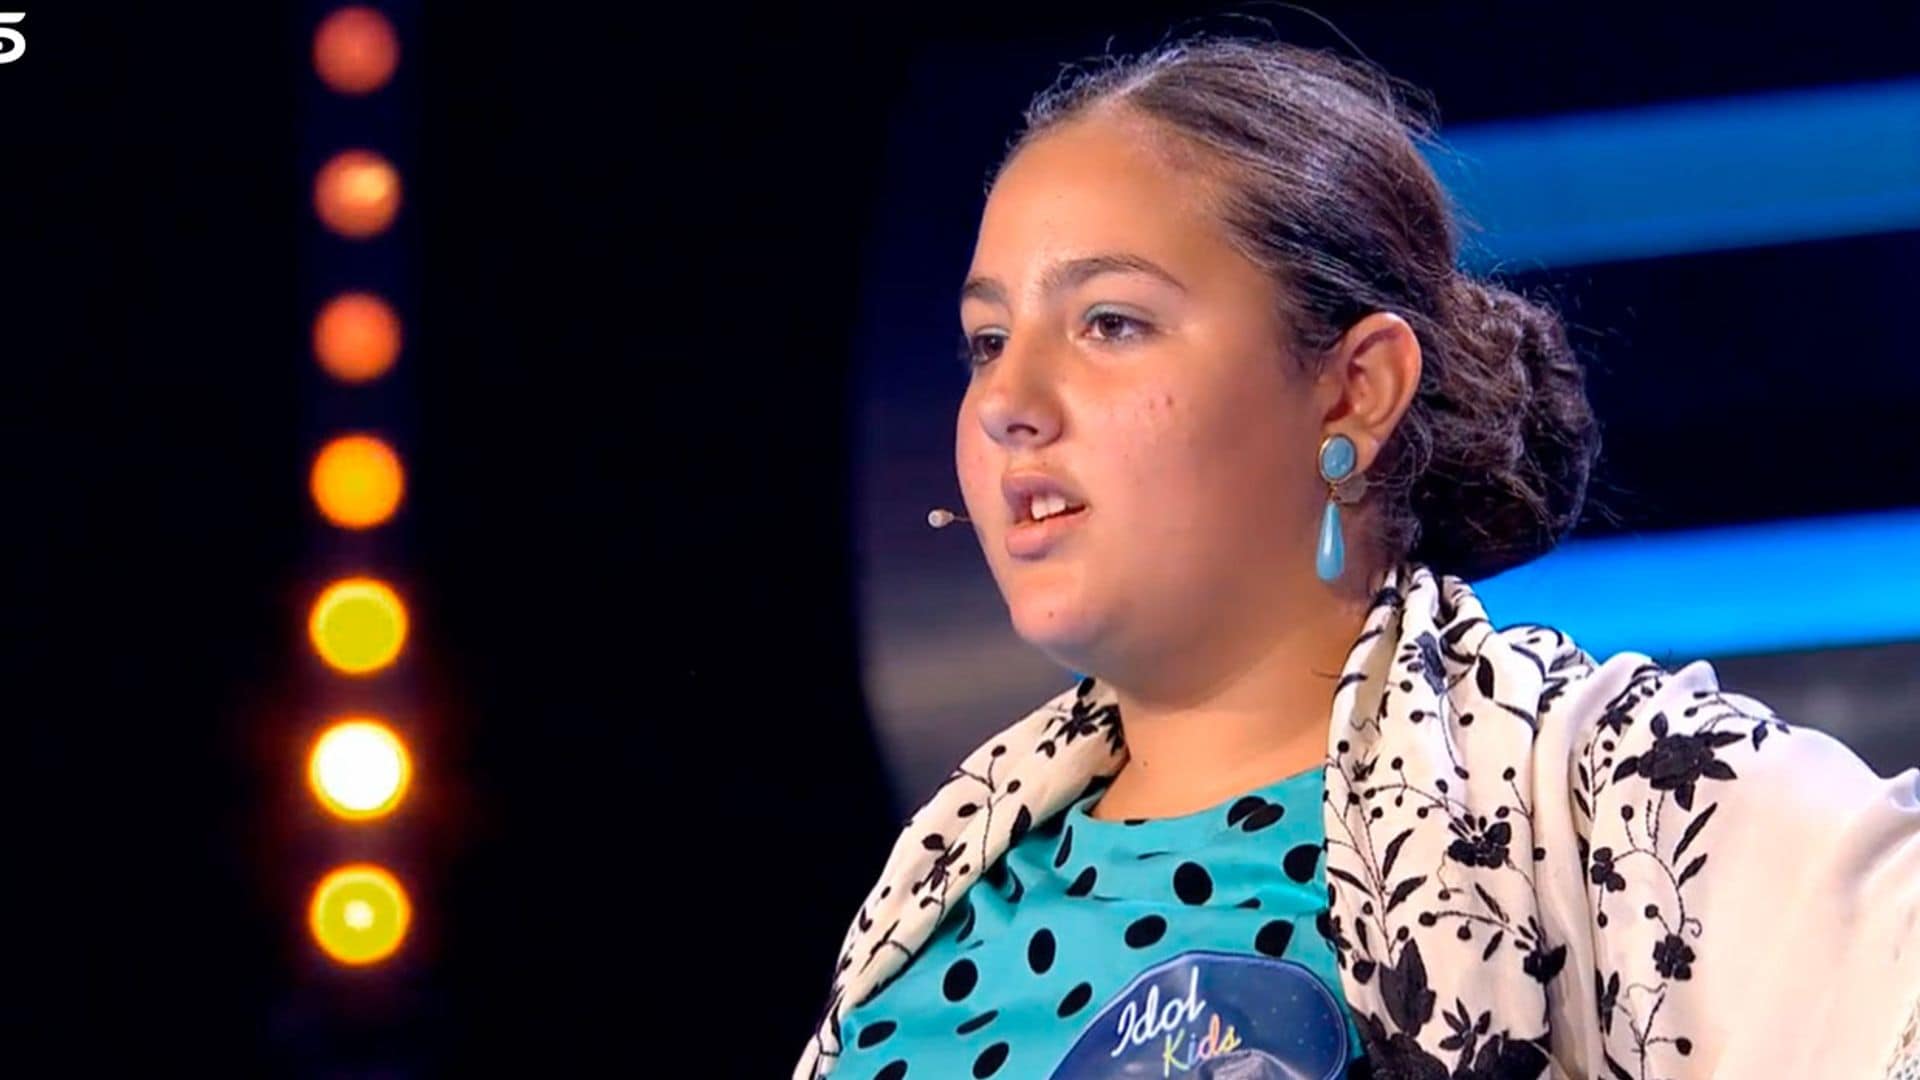 La conexión familiar de Isabel Pantoja con una concursante de 'Idol Kids'